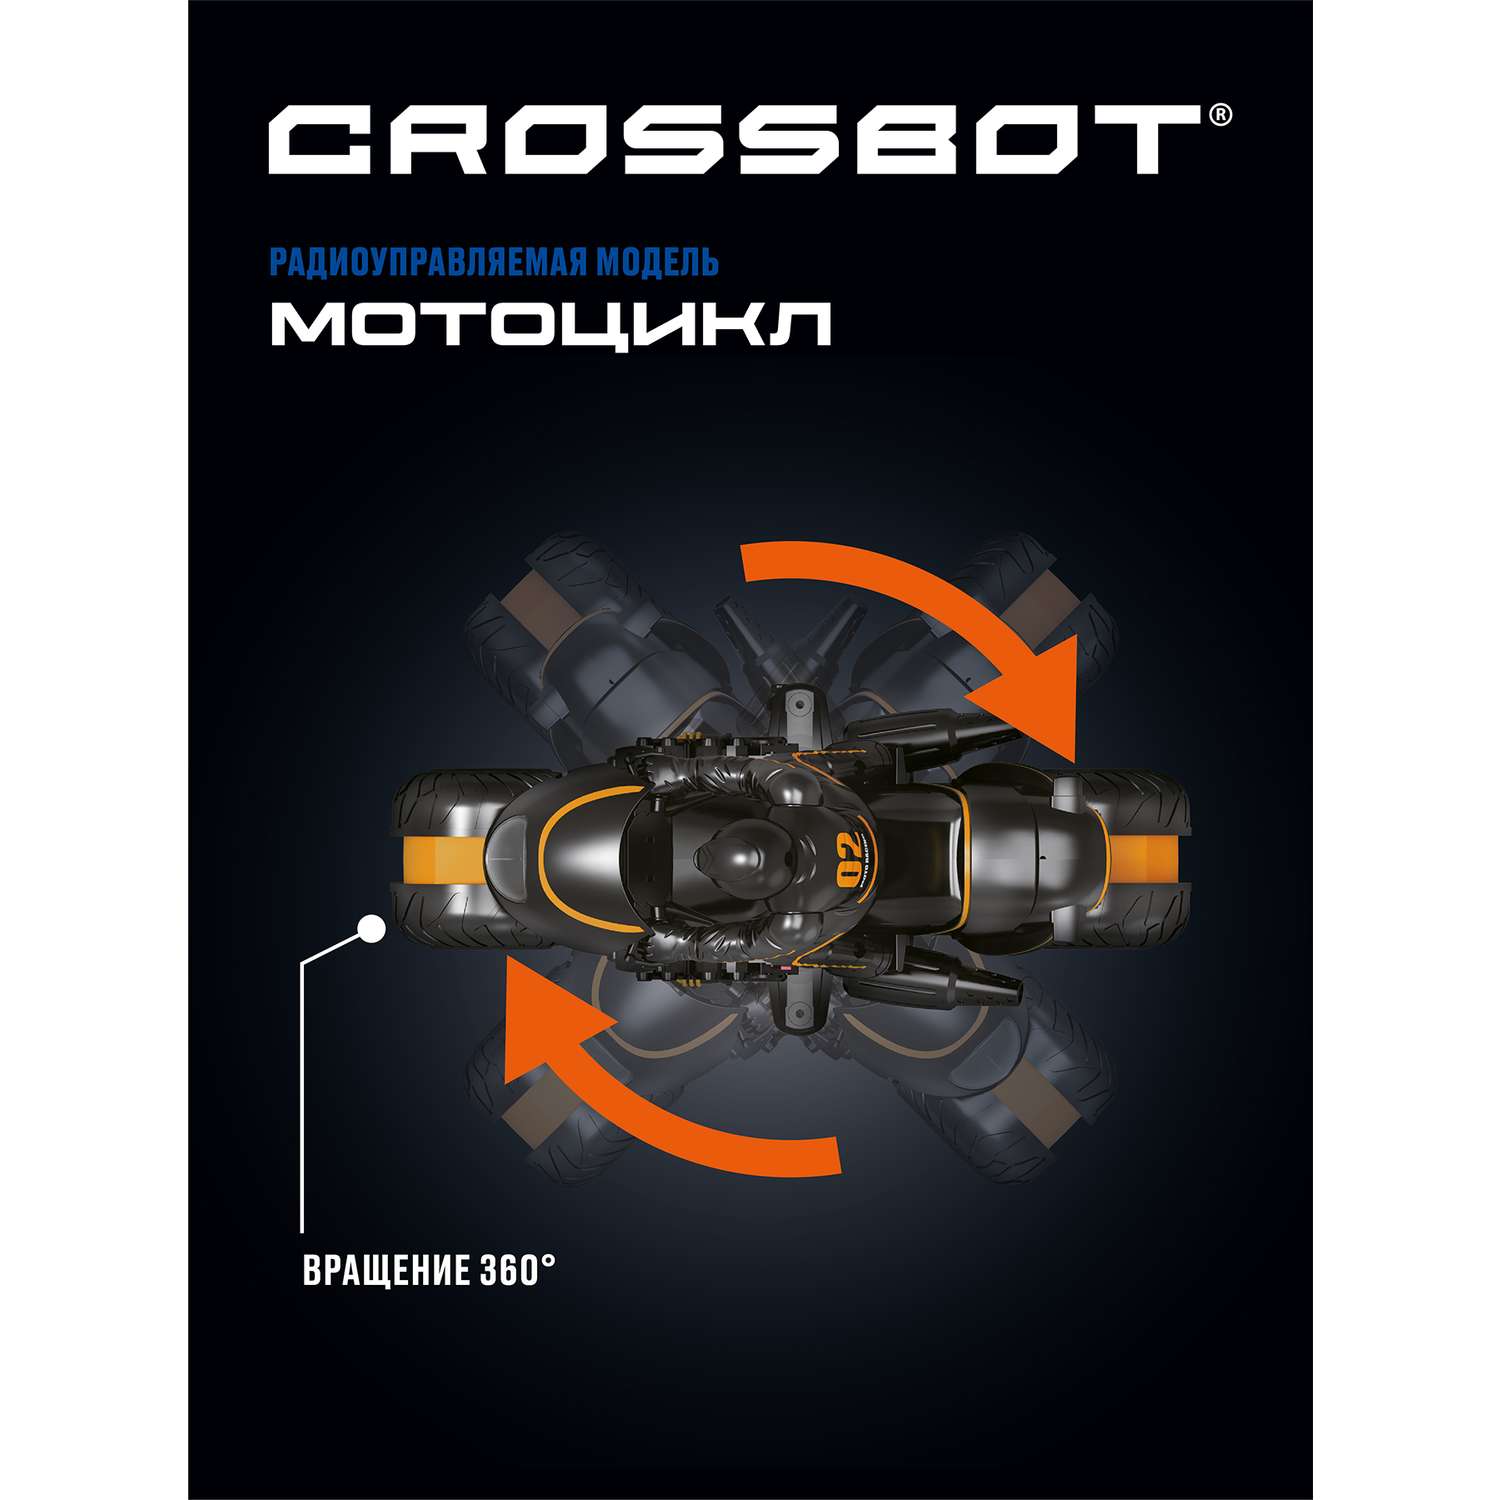 Машина на пульте управления CROSSBOT мотоцикл. Разворот колес. Движение боком - фото 3